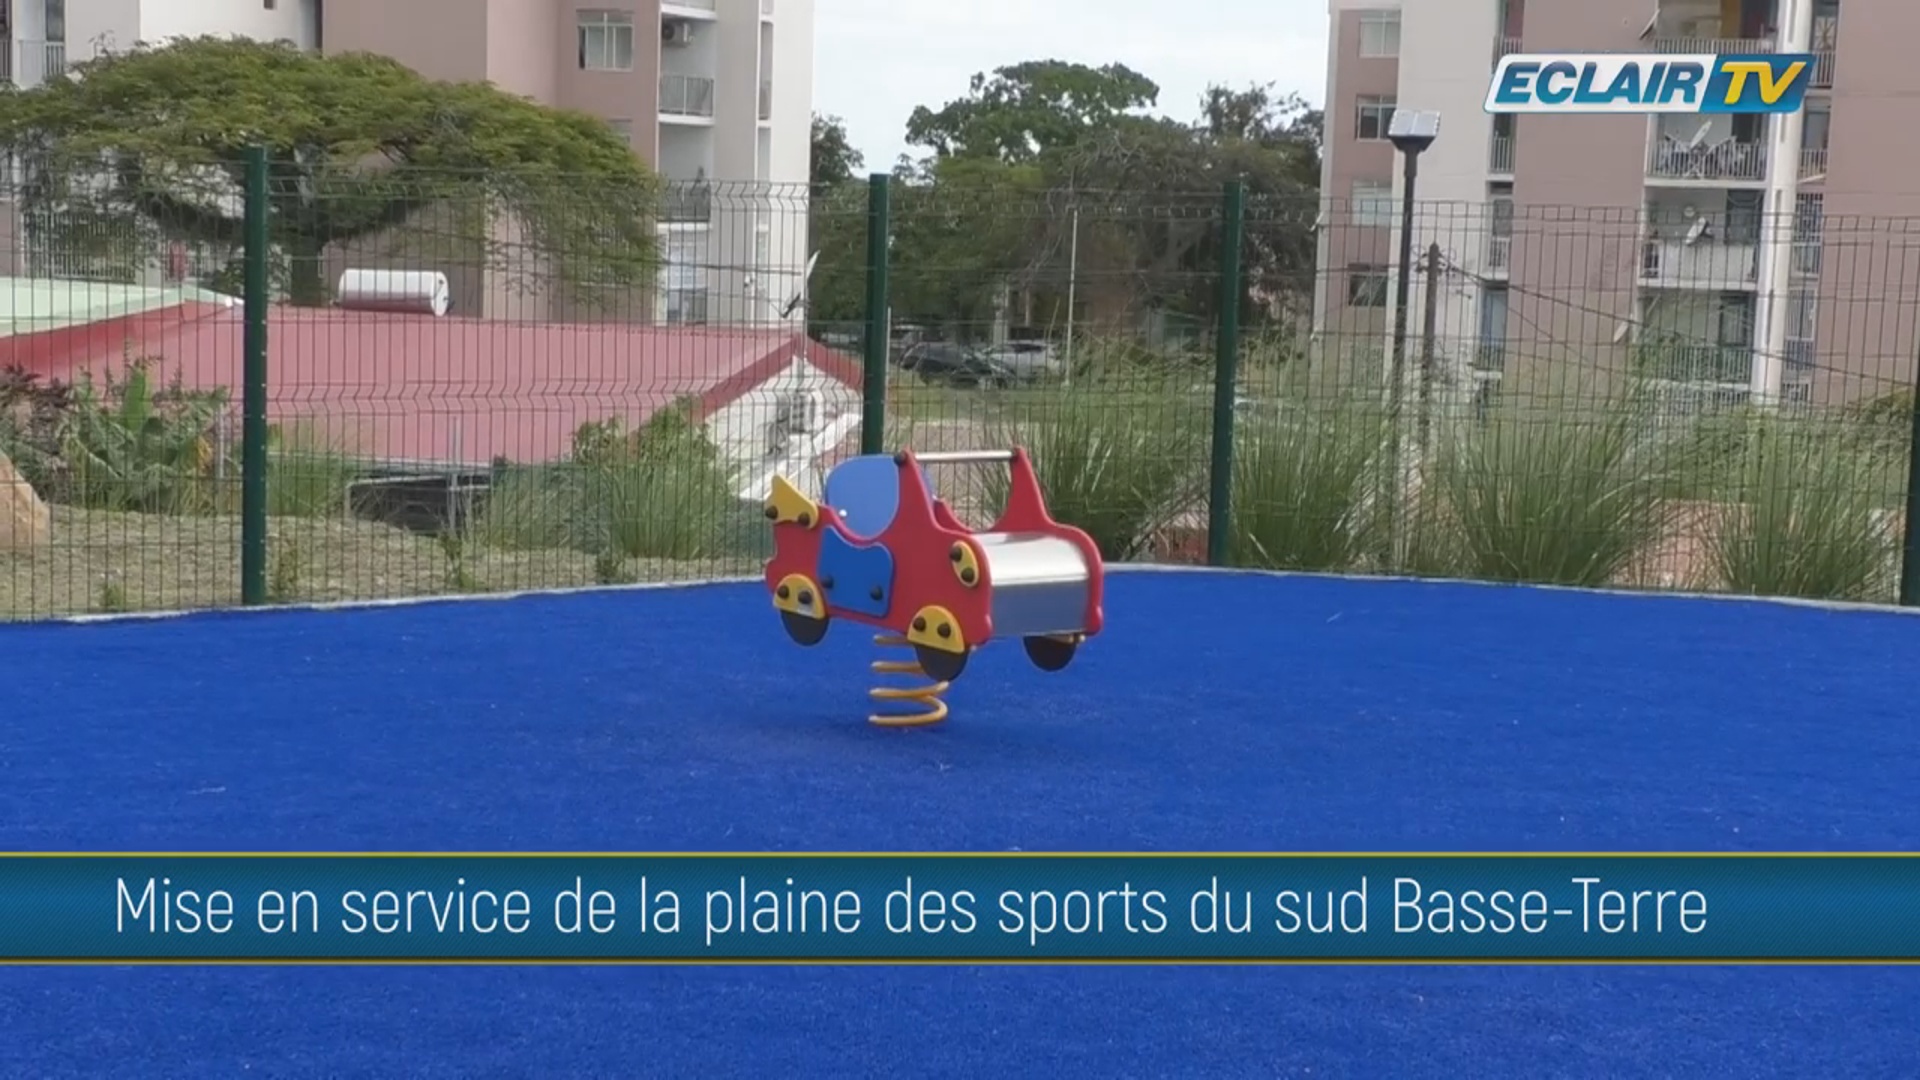 [Vidéo] Onews Guadeloupe. Mise en service de la Plaine des sports du Sud Basse-Terre (Eclair tv)